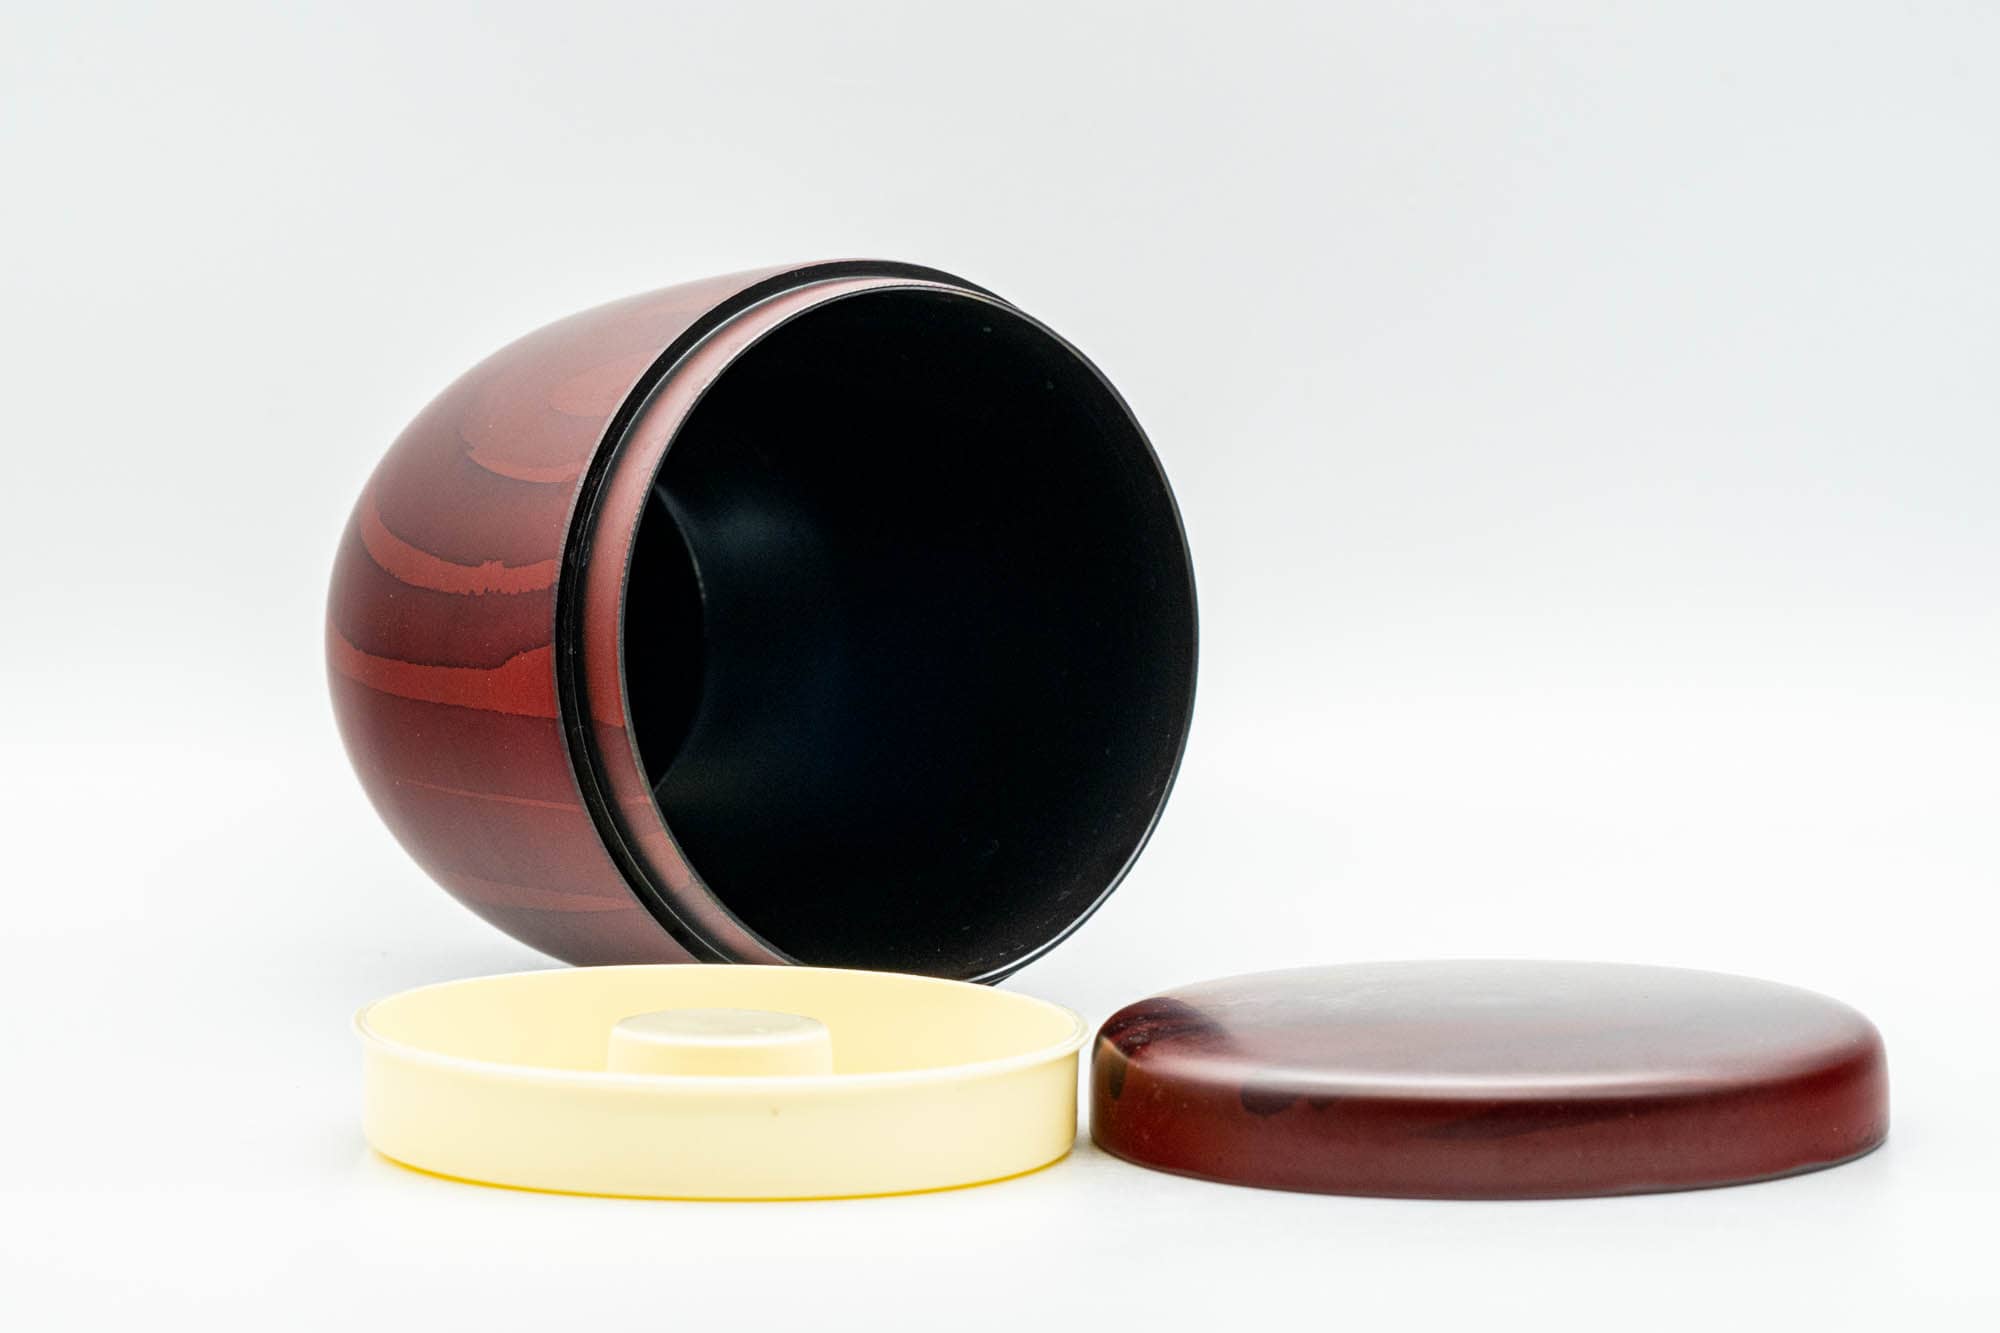 Japanese Chazutsu - Red Wood-Patterned Plastic Tea Canister - 275ml - Tezumi